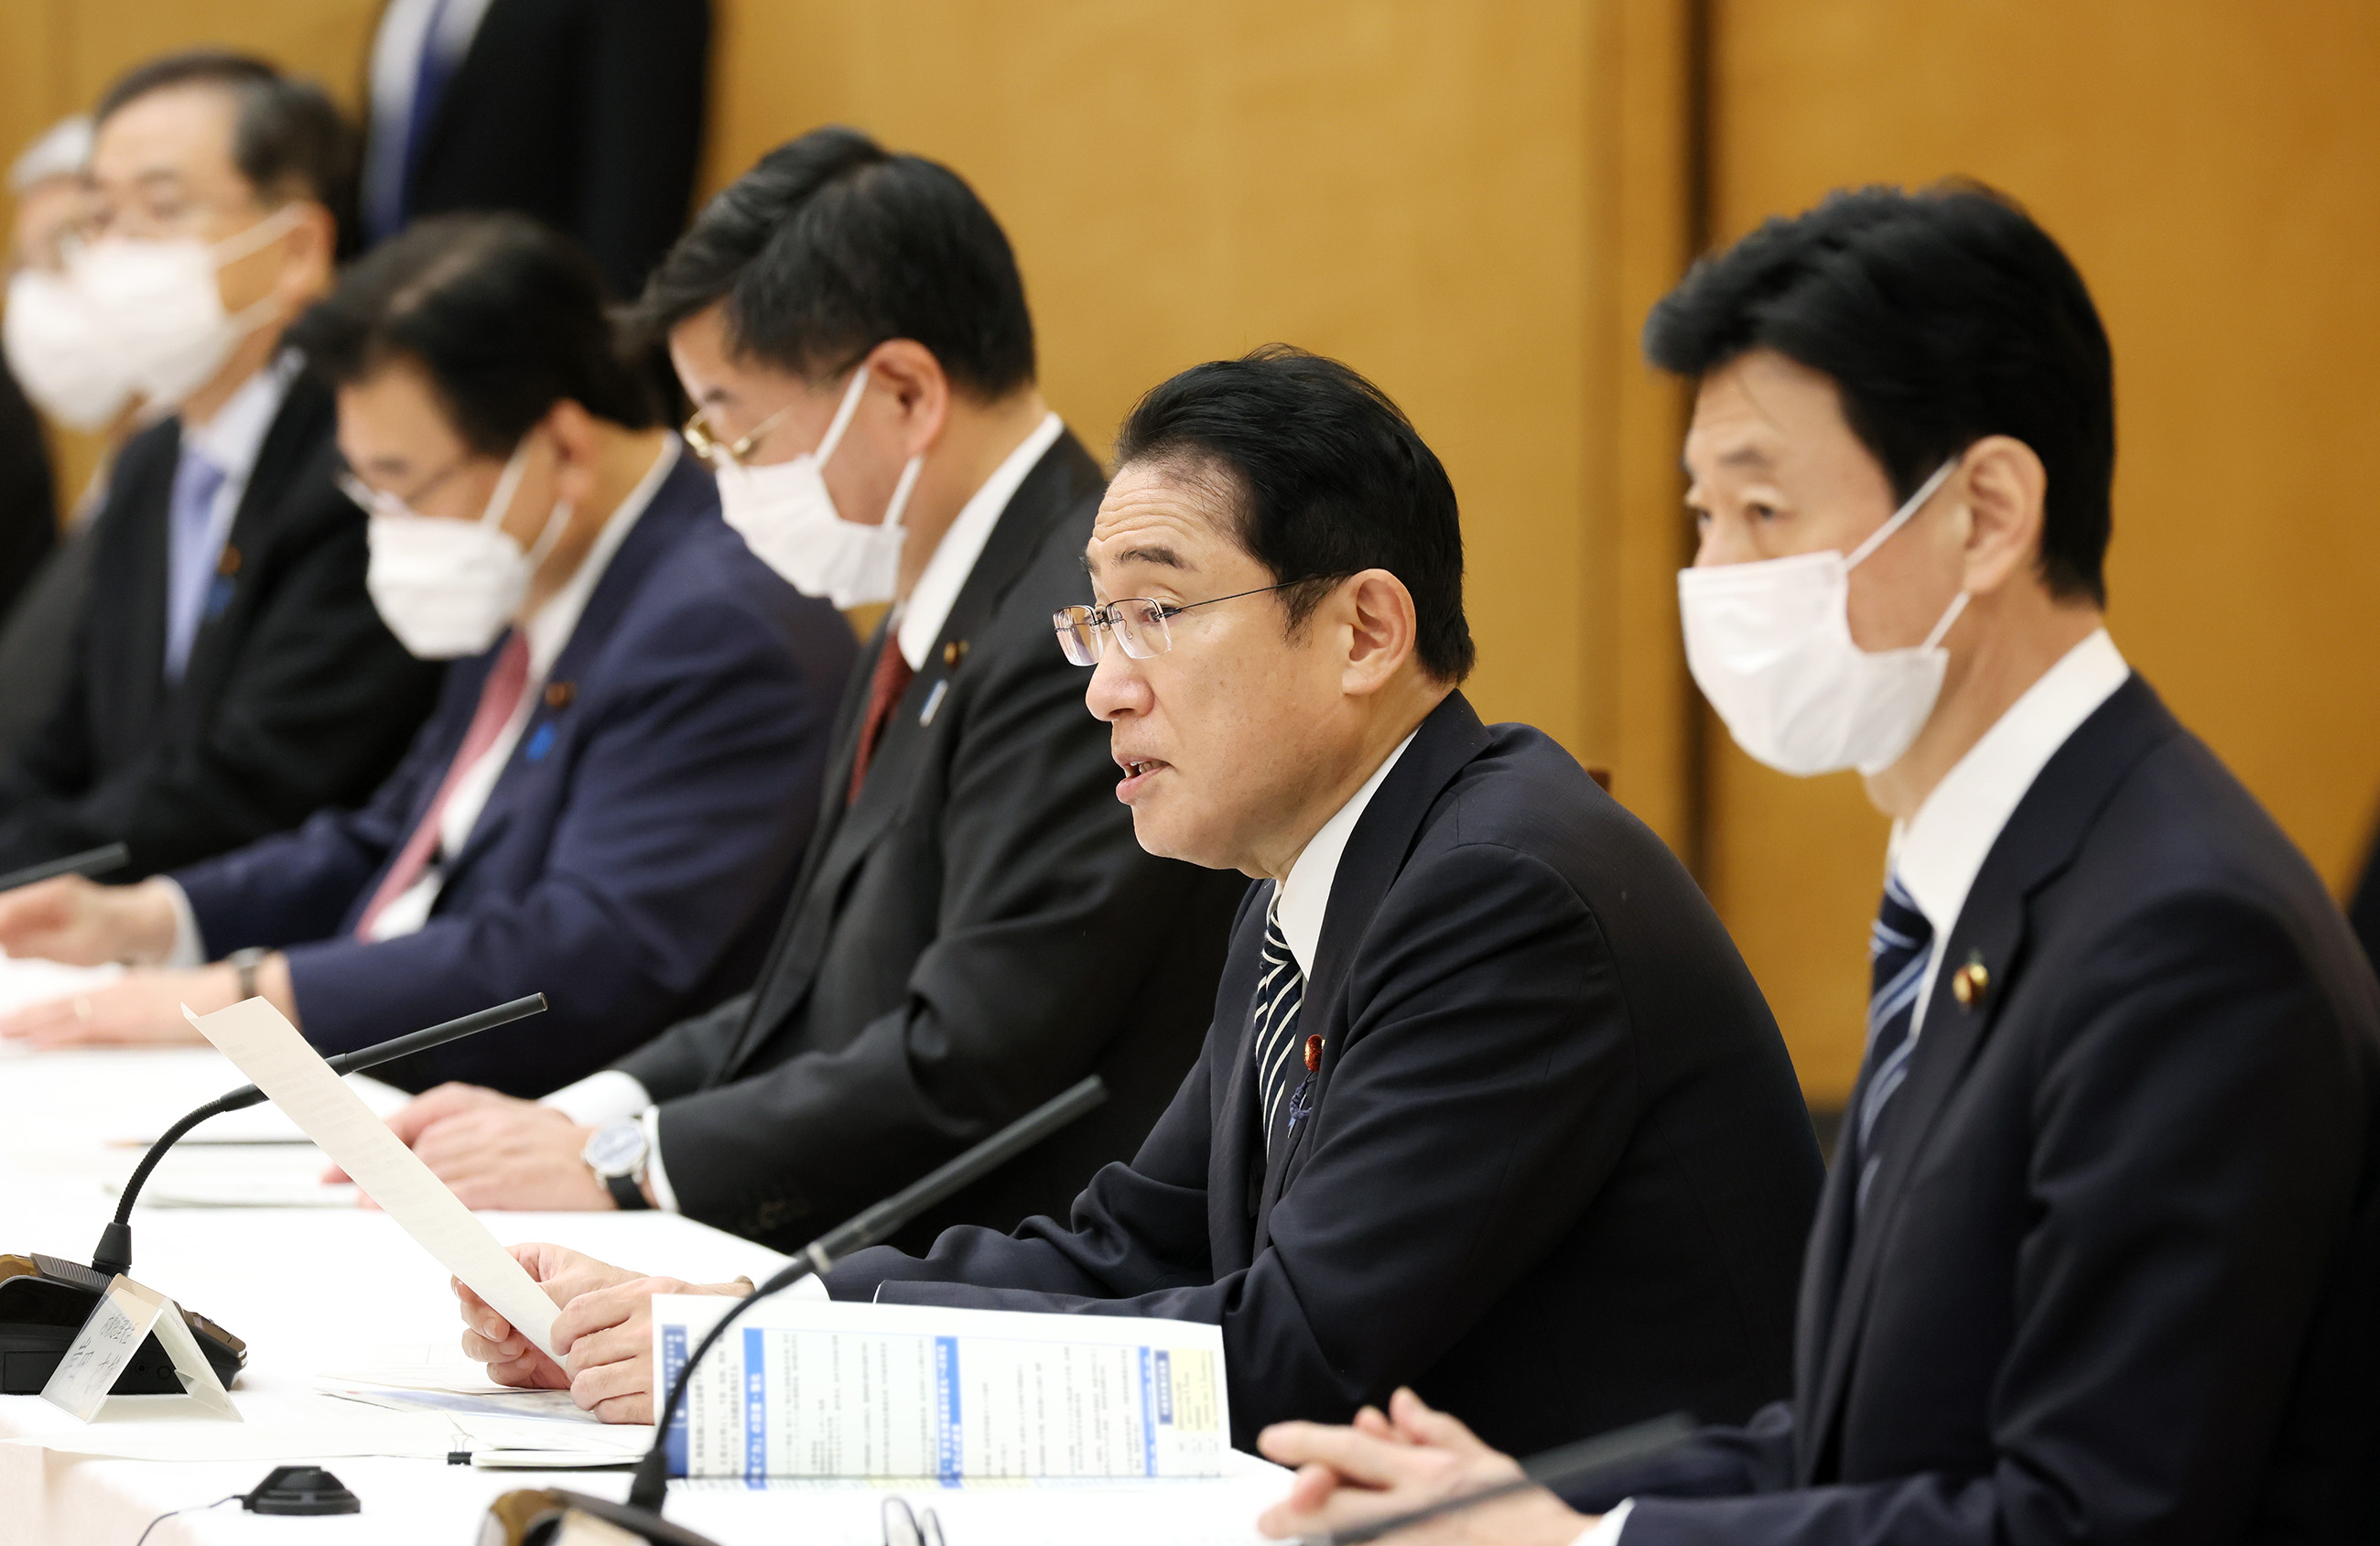 召开旨在扩大日本国内投资的官民合作论坛